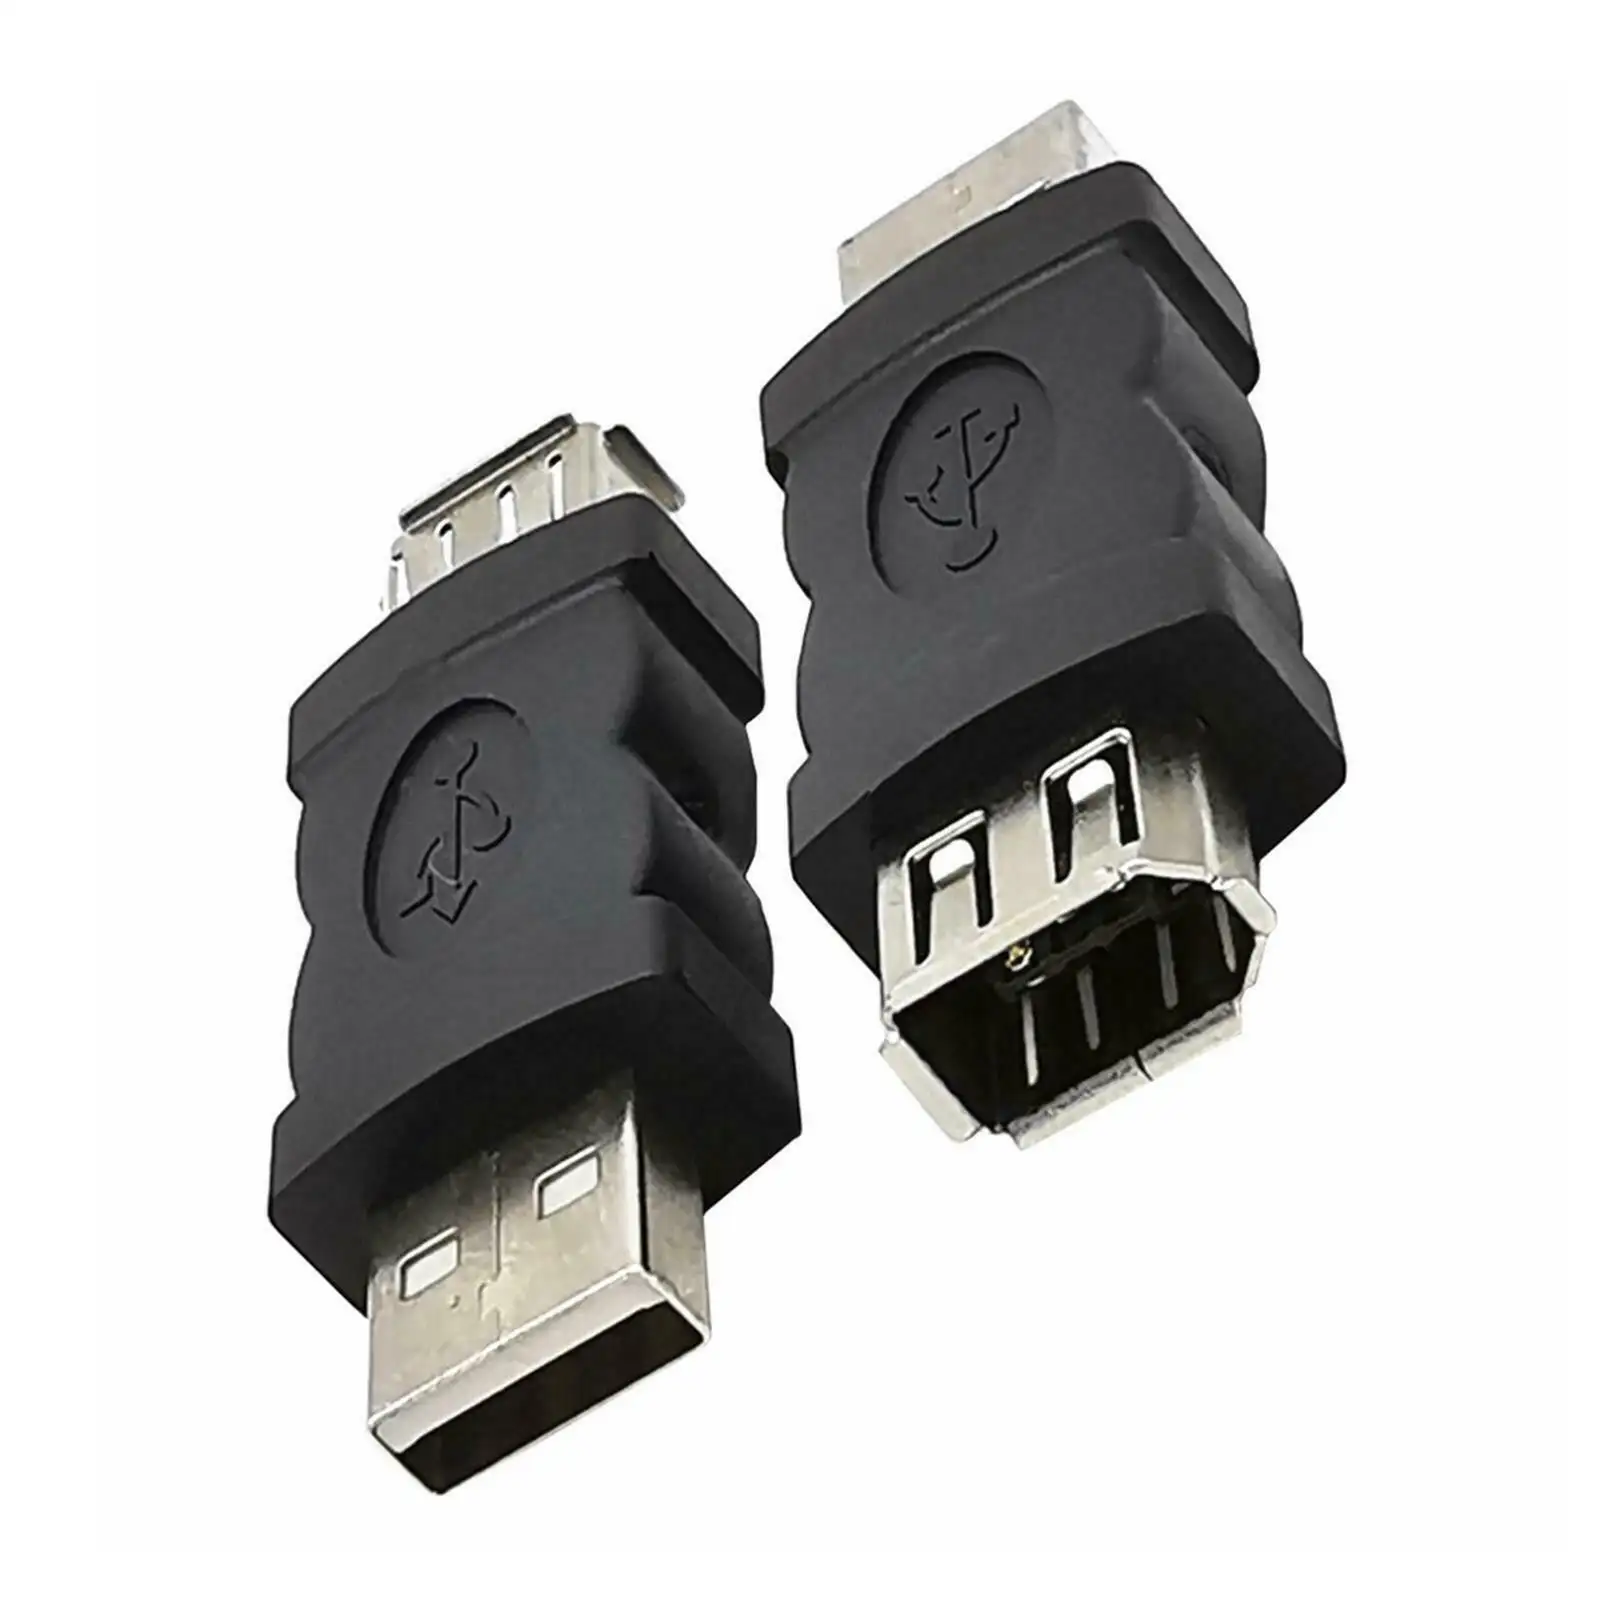 Nuovo Firewire IEEE 1394 6 Pin femmina F a USB M convertitore adattatore maschio